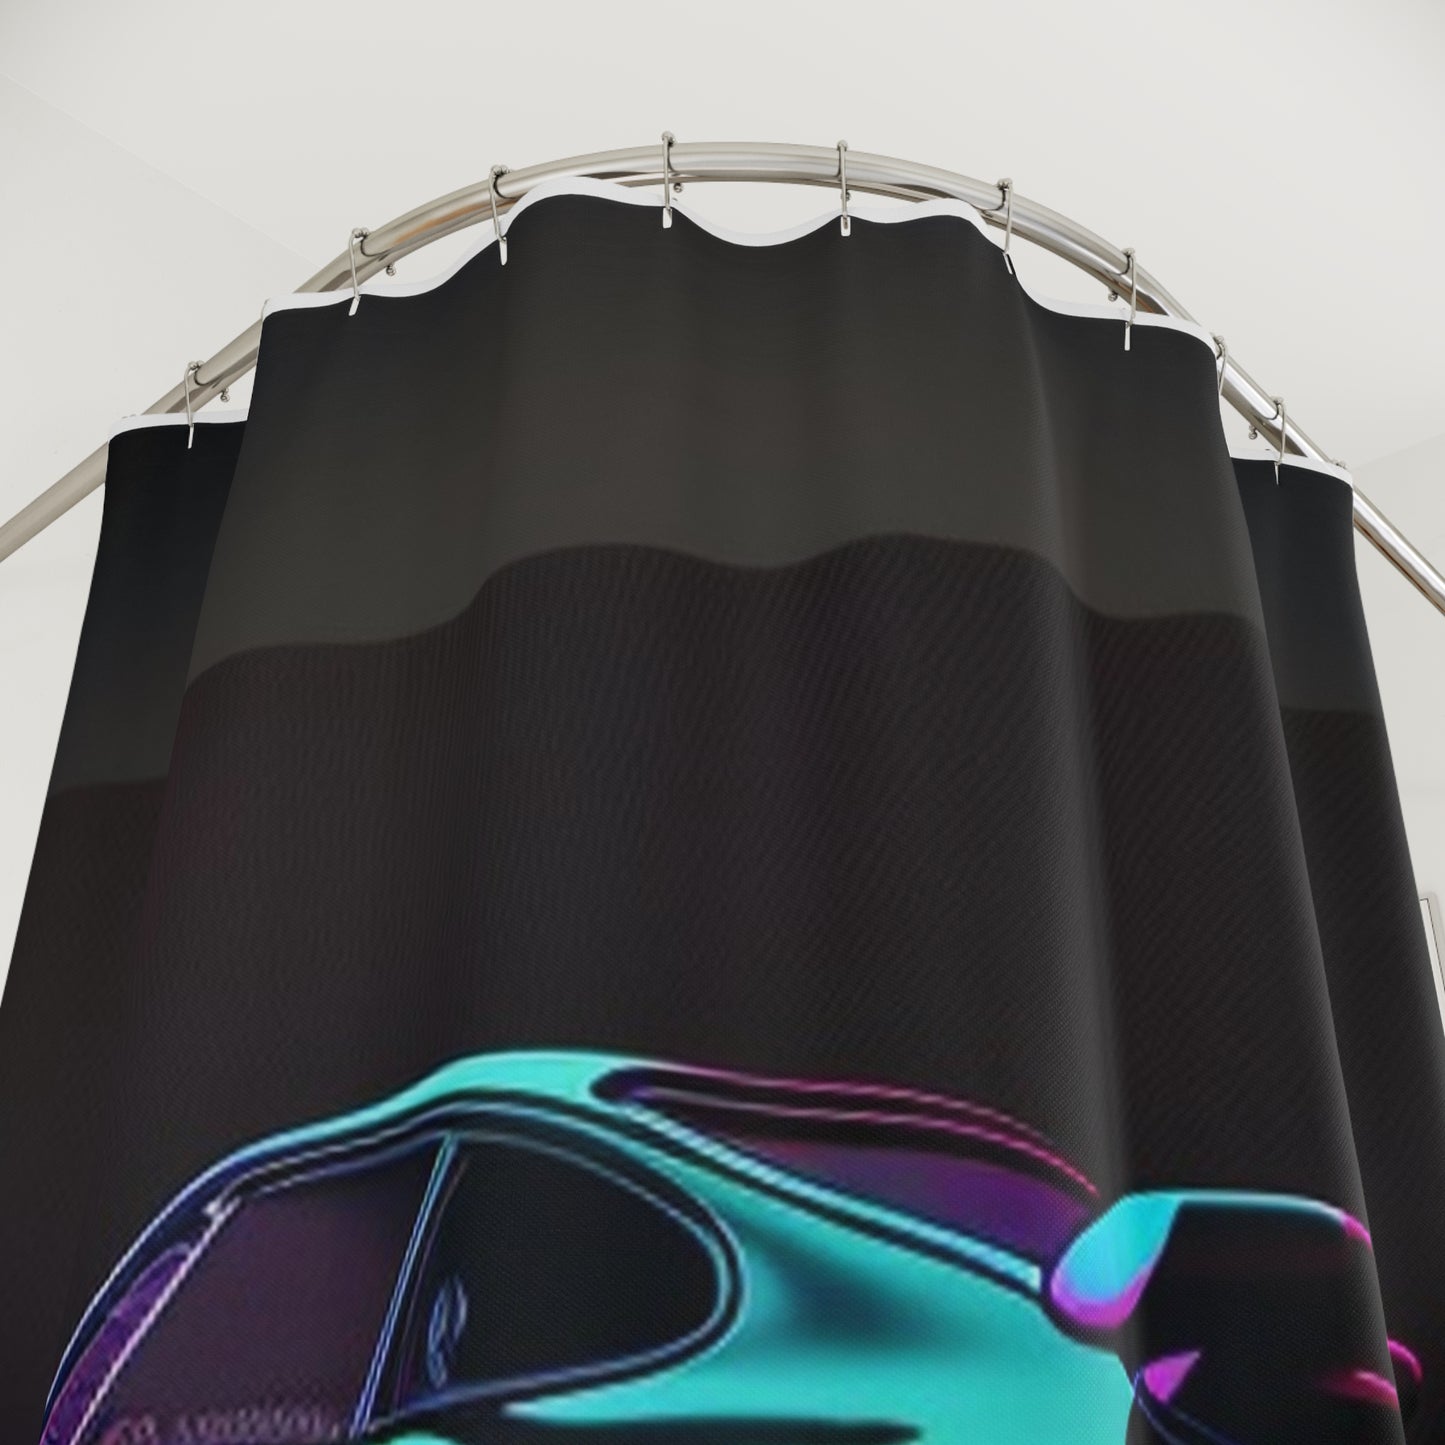 Polyester Shower Curtain Porsche Purple 2